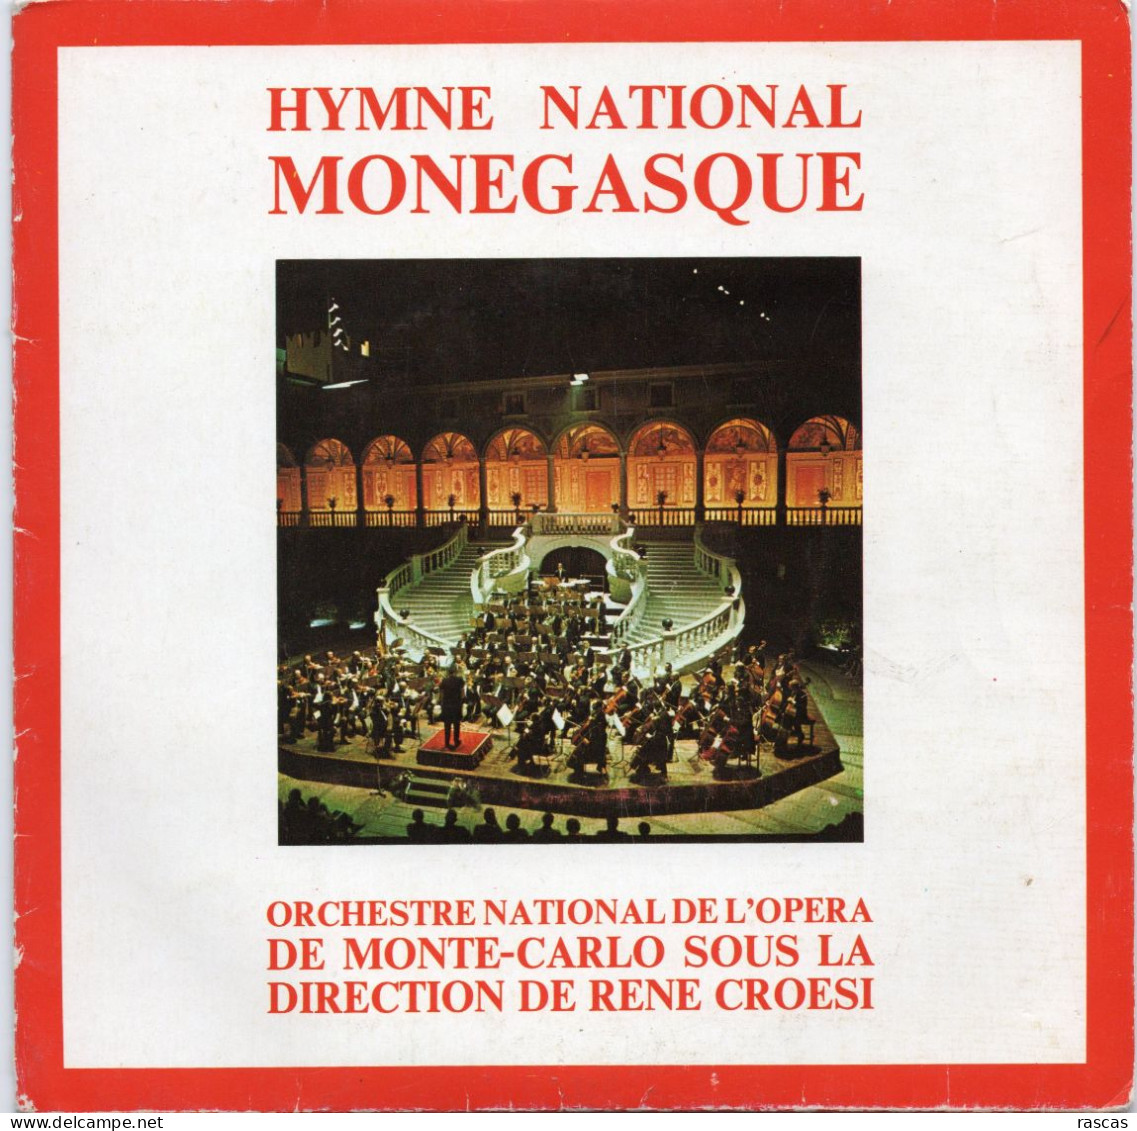 DISQUE VINYL 45 T HYMNE NATIONAL DE MONACO PAR L'ORCHESTRE DE L'OPERA DE MONTE CARLO SOUS LA DIRECTION DE RENE CROESI - World Music